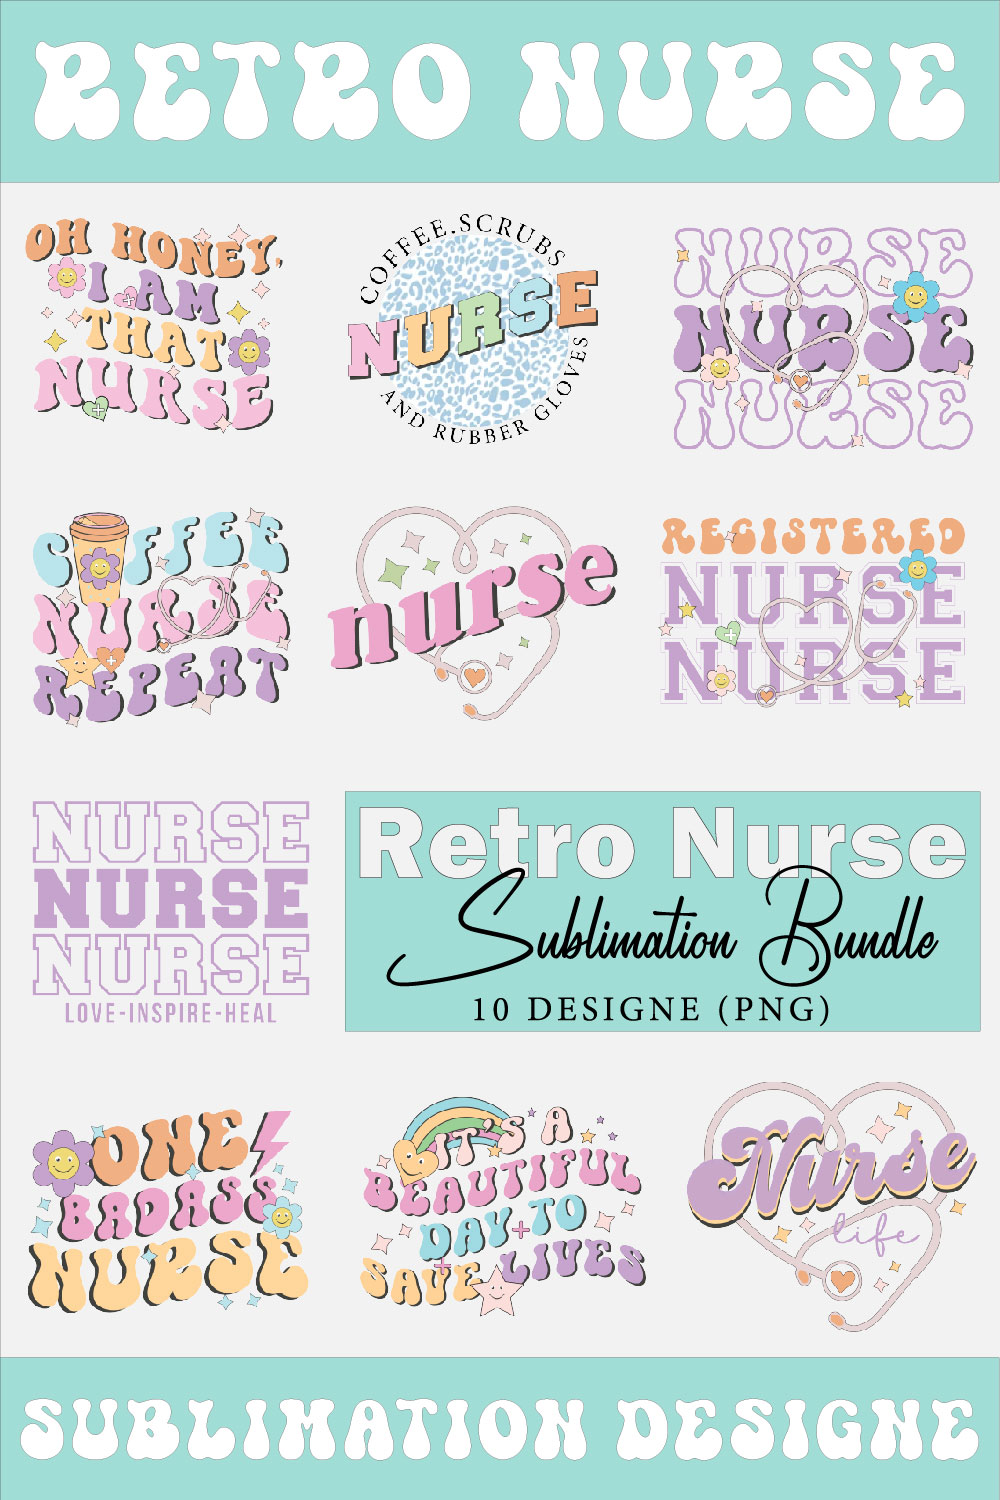 Retro Nurse Sublimation Bundle pinterest preview image.